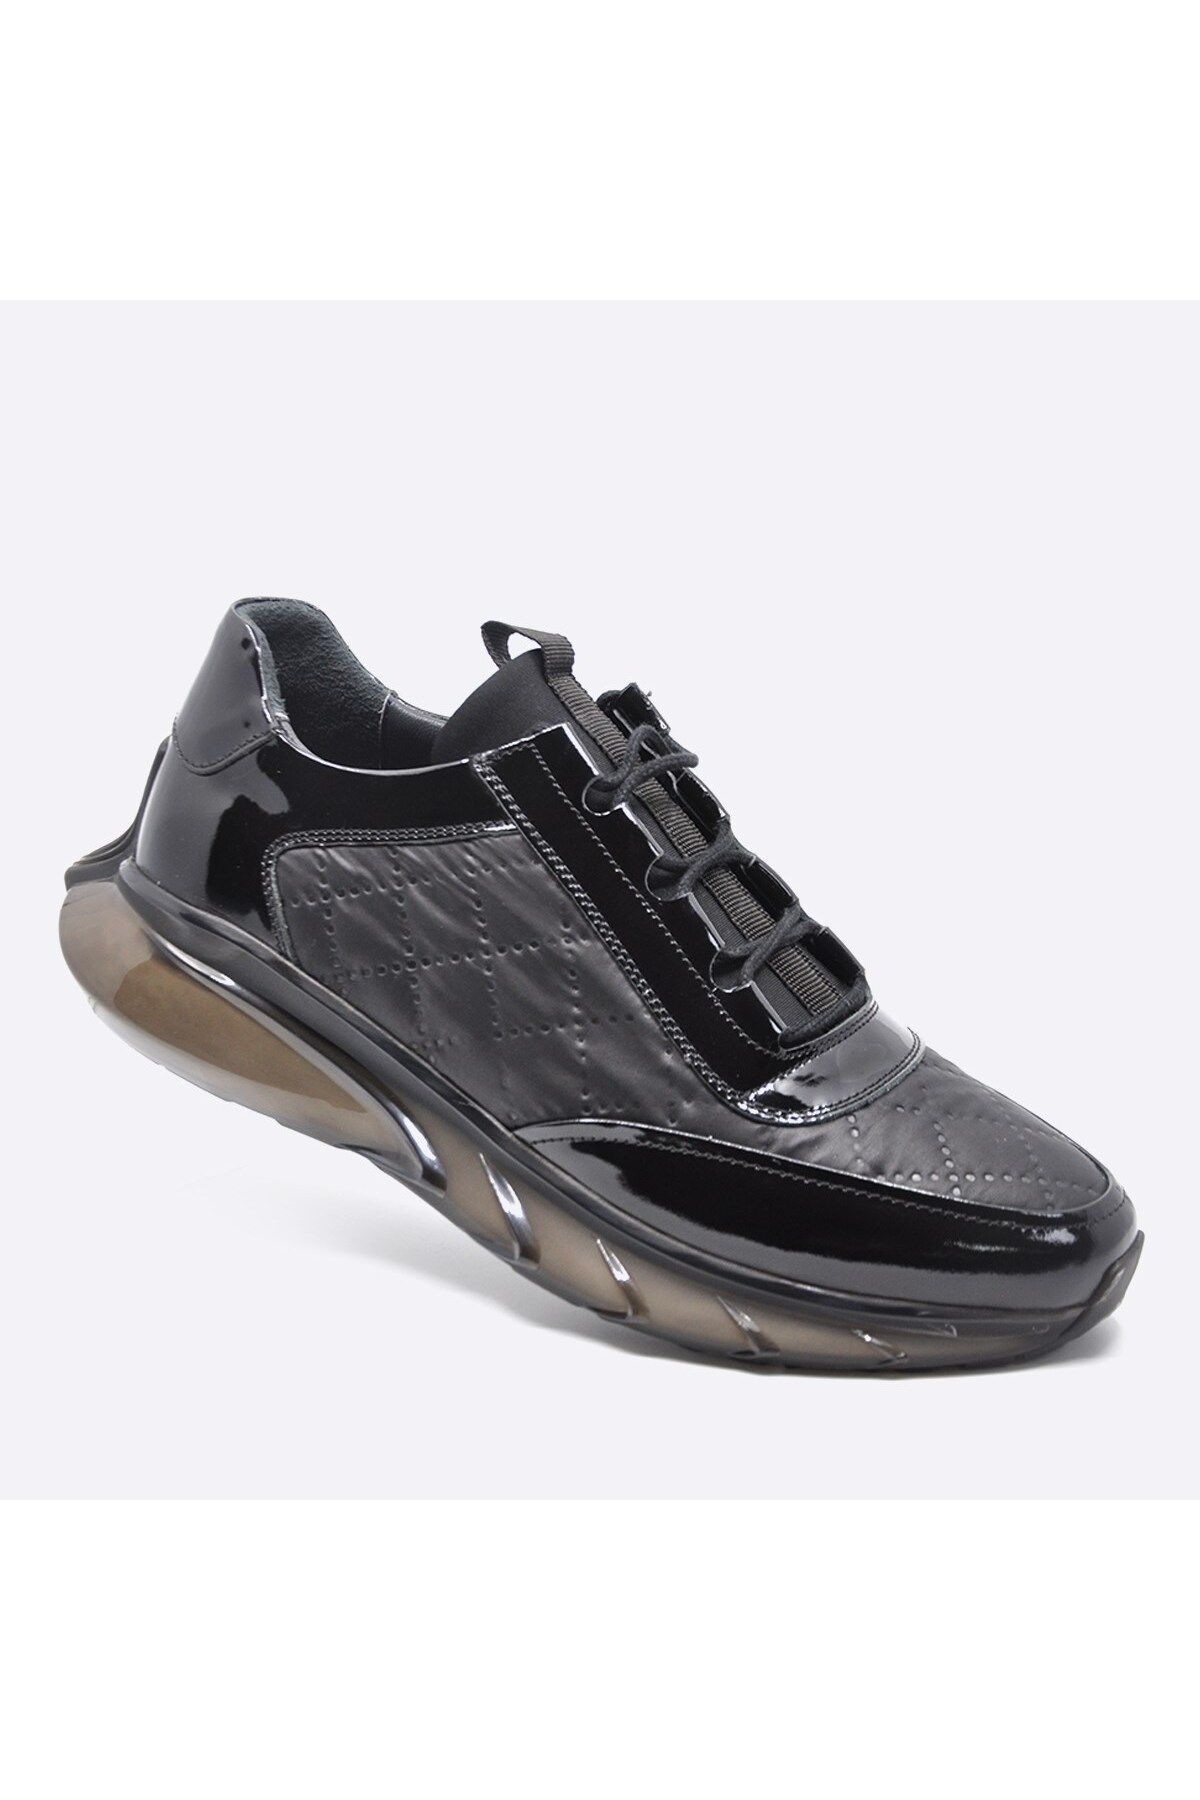 Fosco Hakiki Deri Sneaker Erkek Ayakkabı Siyah 9871 100